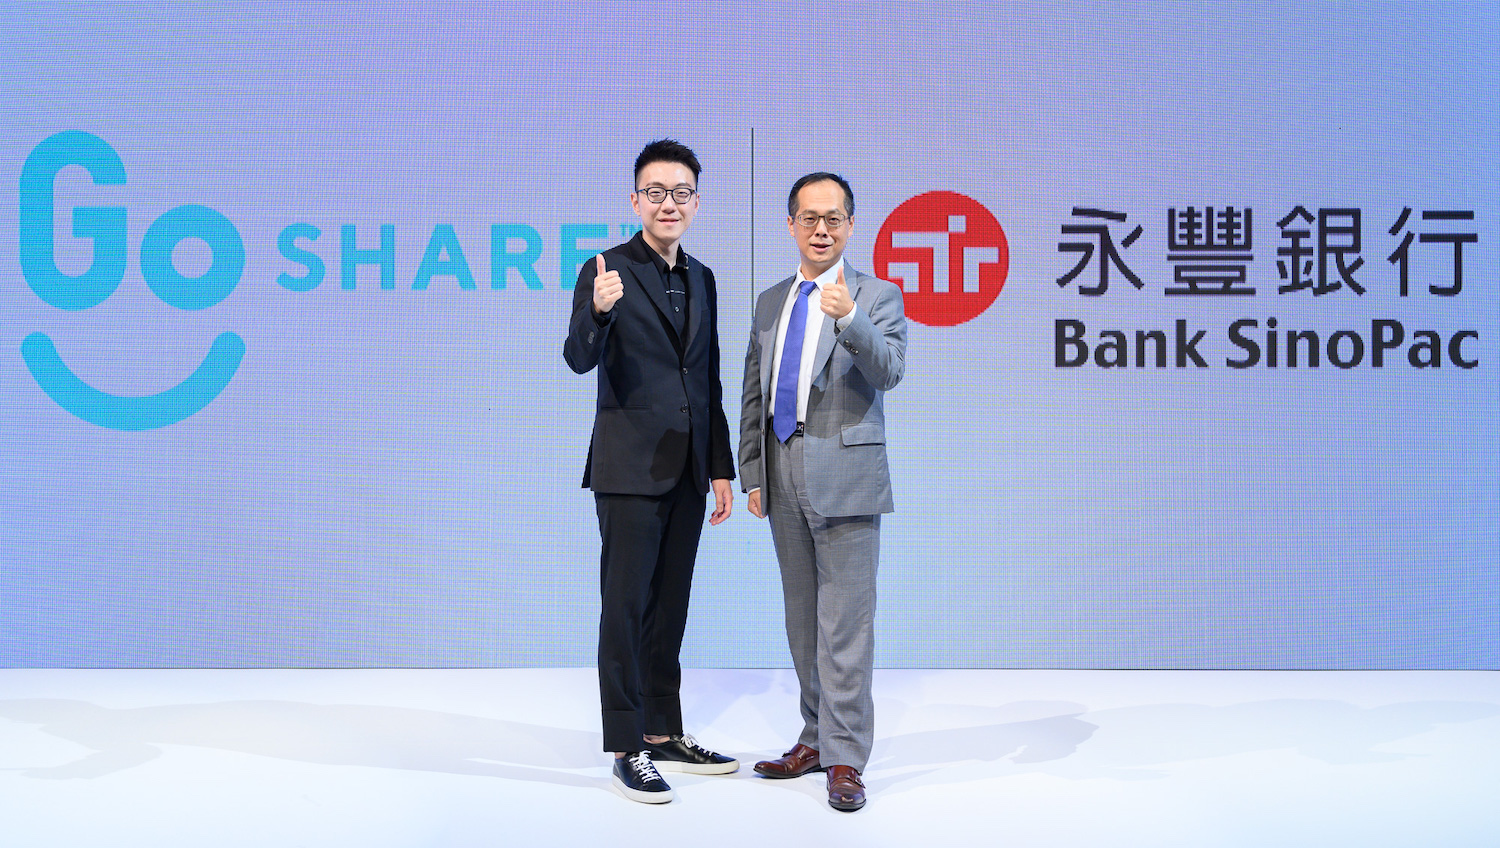 從左至右為：GoShare 新事業總監姜家煒、永豐銀行零售金融處處長吳建毅。